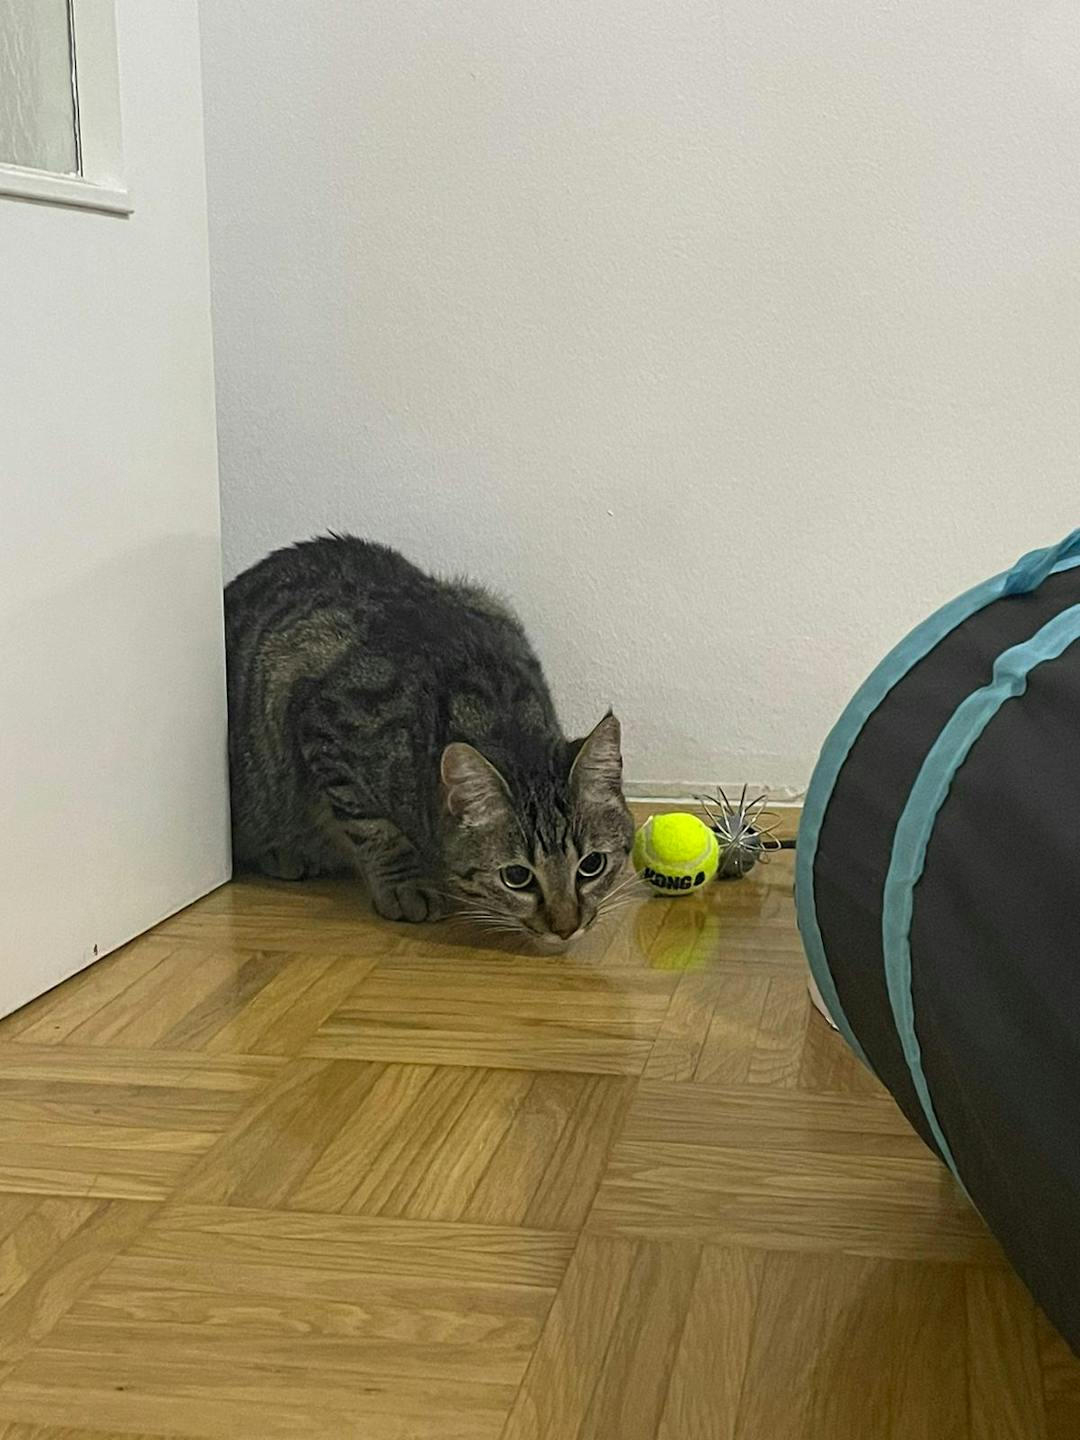 Mačka Muca po imenu Lili išče nov dom